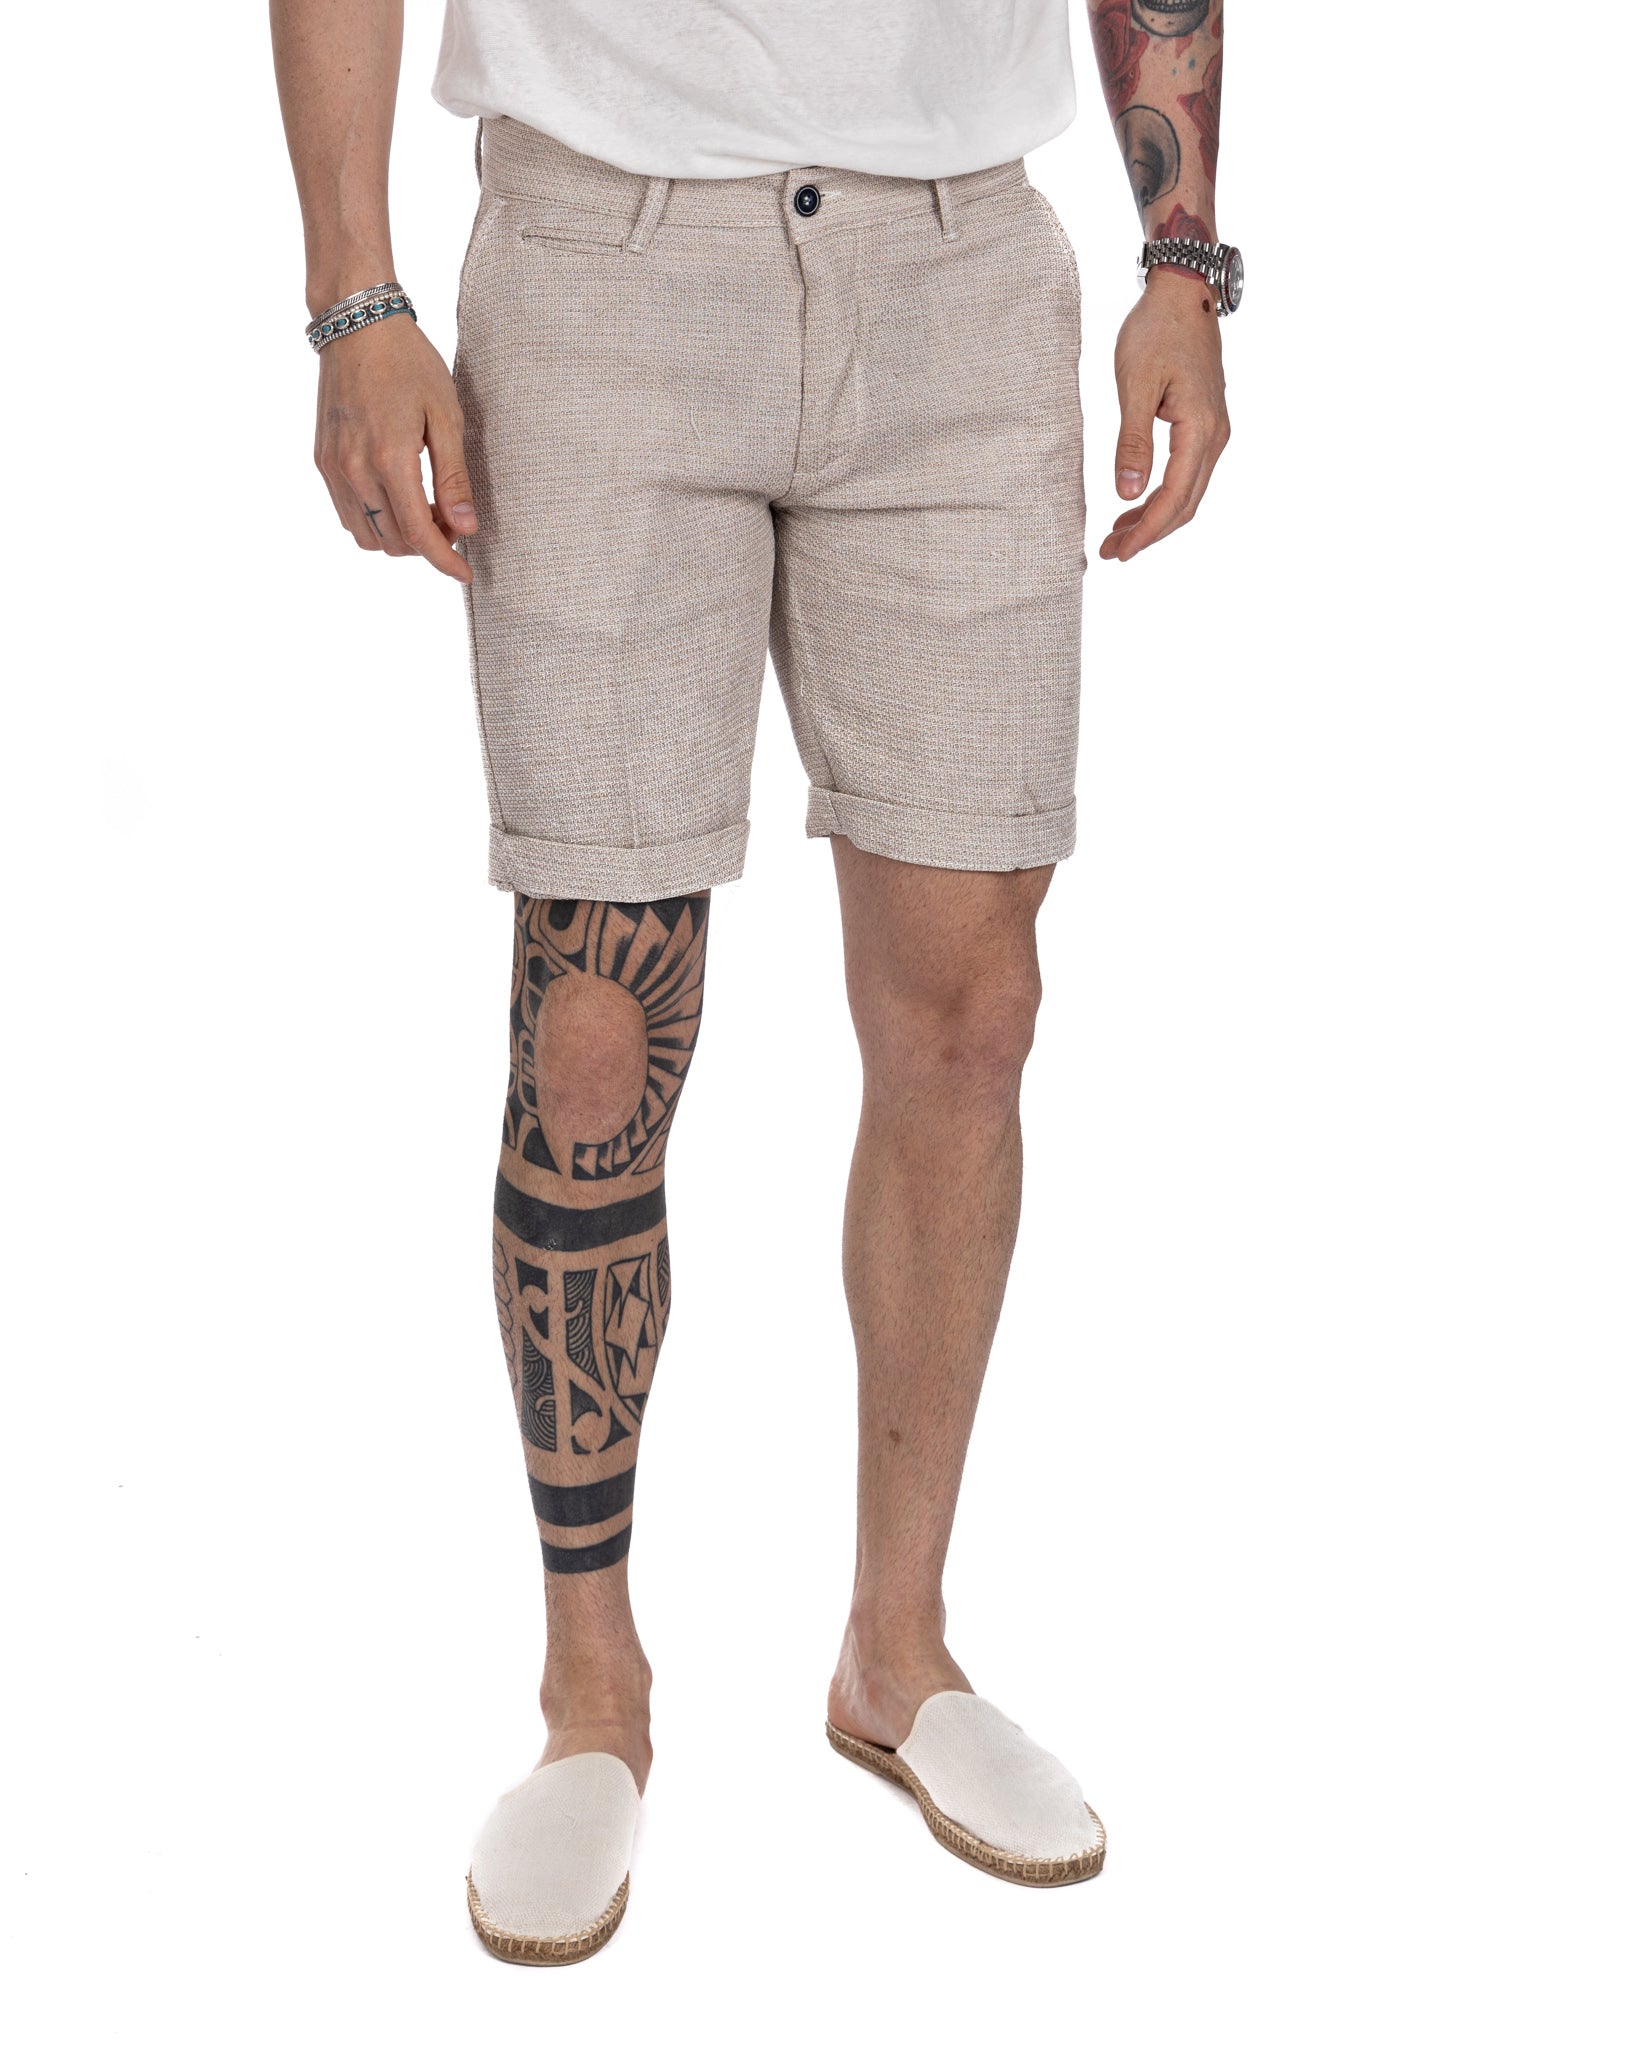 Locorotondo - linen and cotton twine Bermuda shorts